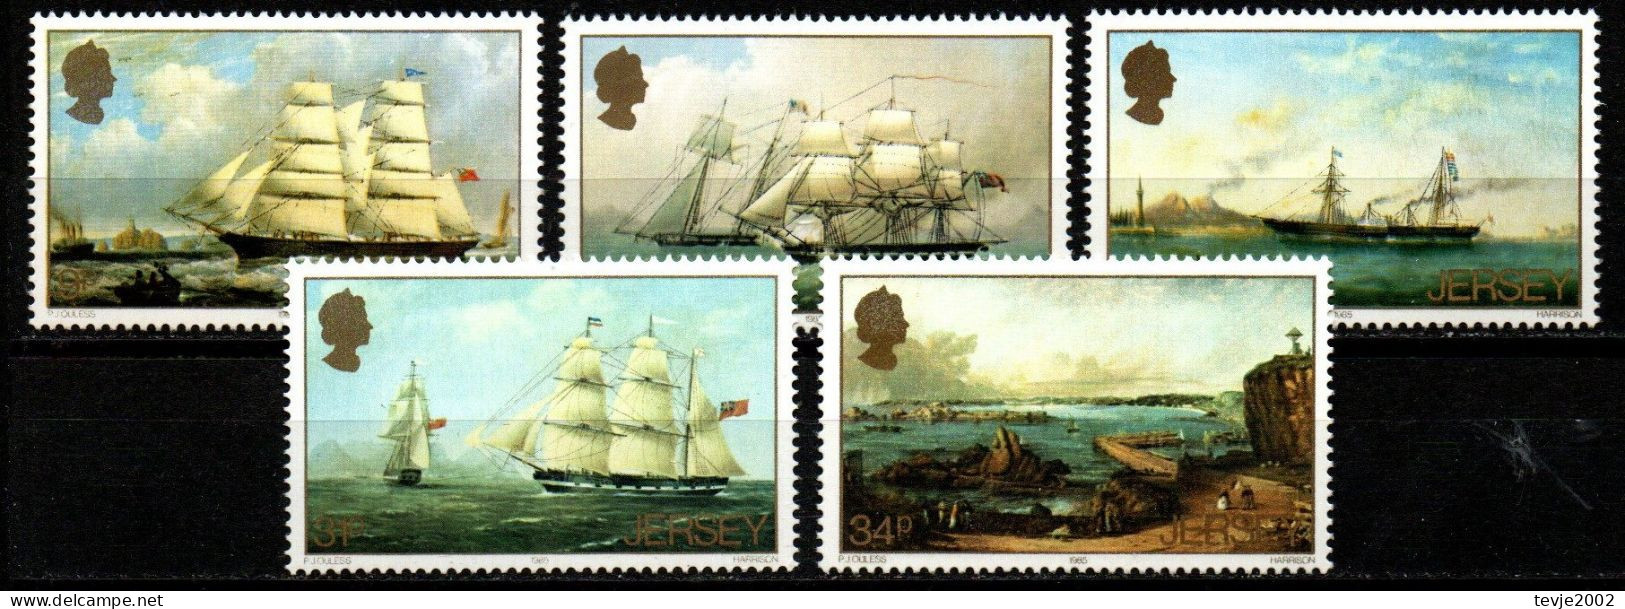 Jersey 1985 - Mi.Nr. 342 - 346 - Postfrisch MNH - Segelschiffe Sailing Ships - Bateaux